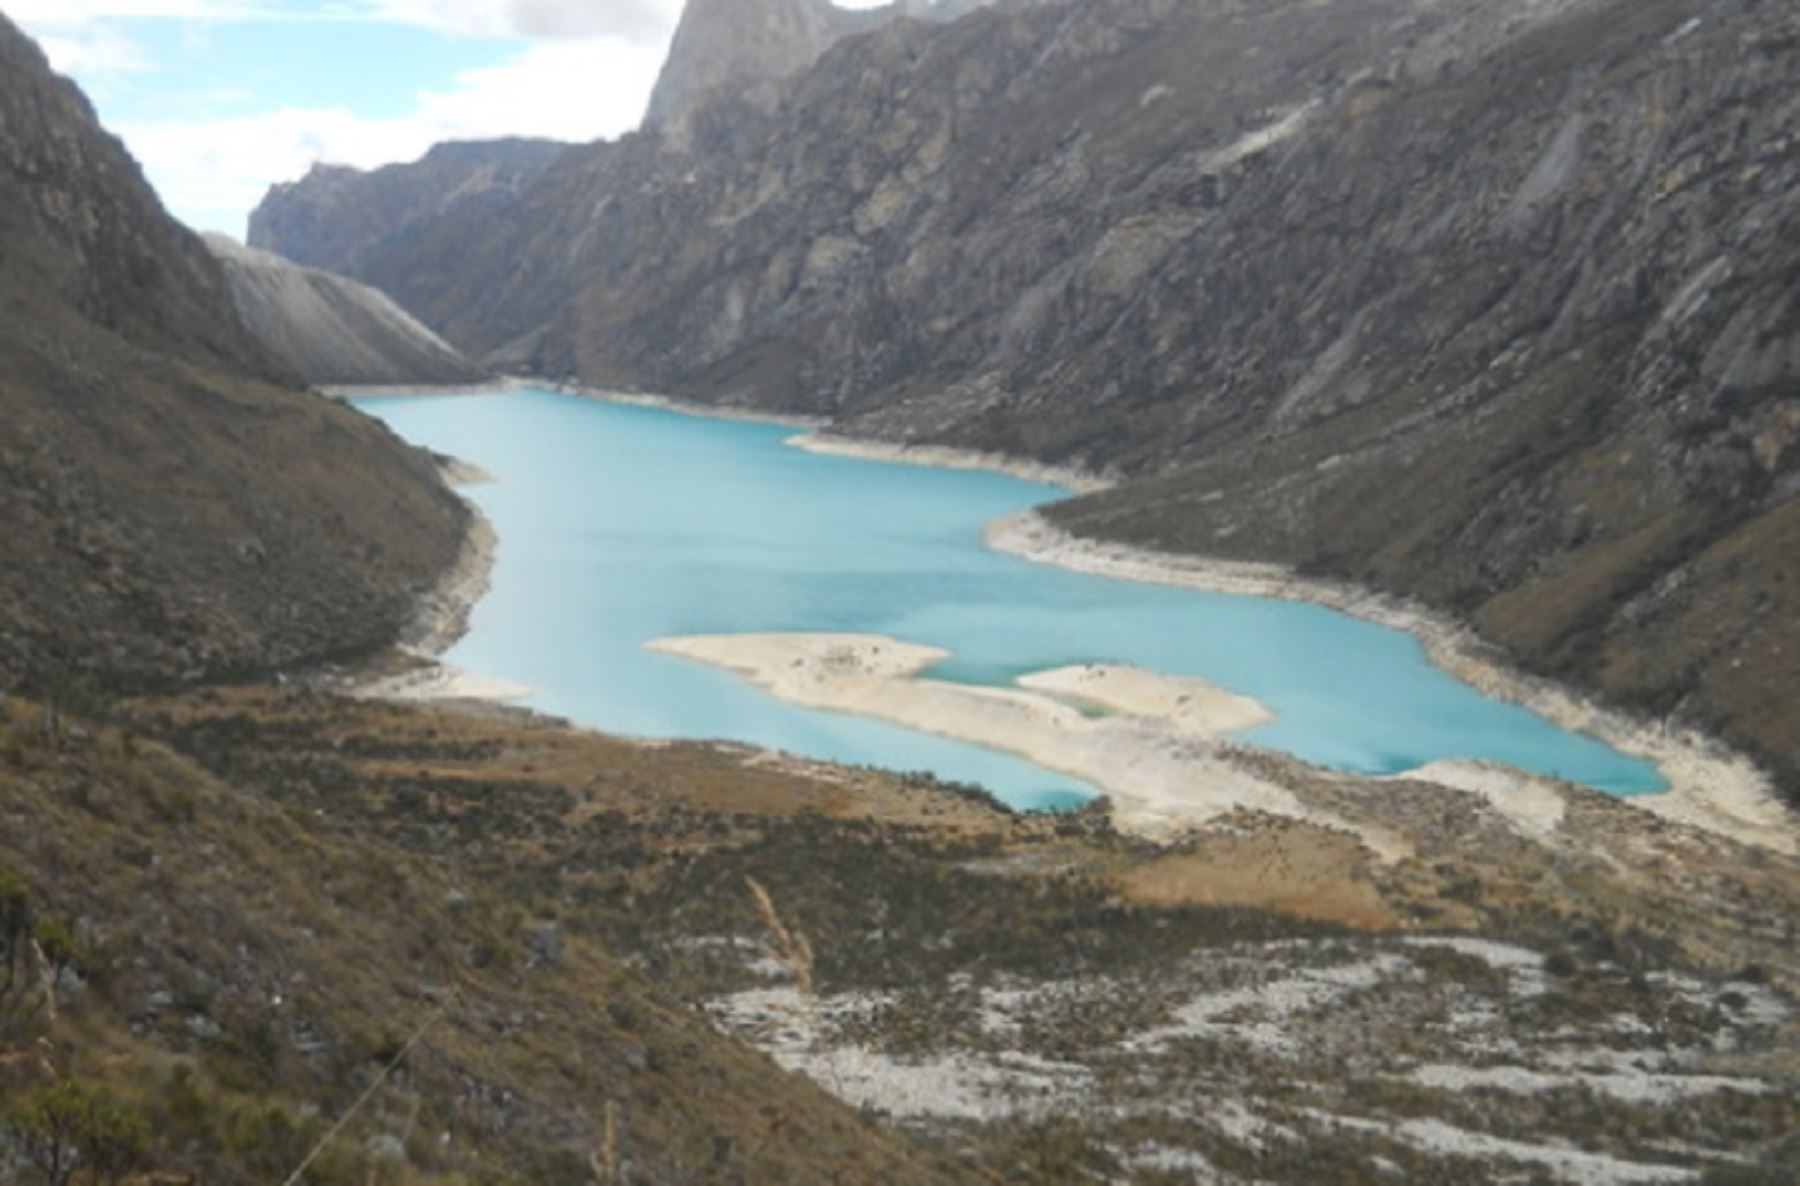 Expertos del Instituto Nacional de Investigación en Glaciares y Ecosistemas de Montaña (Inaigem), entidad adscrita al Ministerio del Ambiente (Minam), evalúan los riesgos para prevenir un eventual aluvión en la laguna parón, ubicada en la provincia de Huaylas, en la región Áncash.